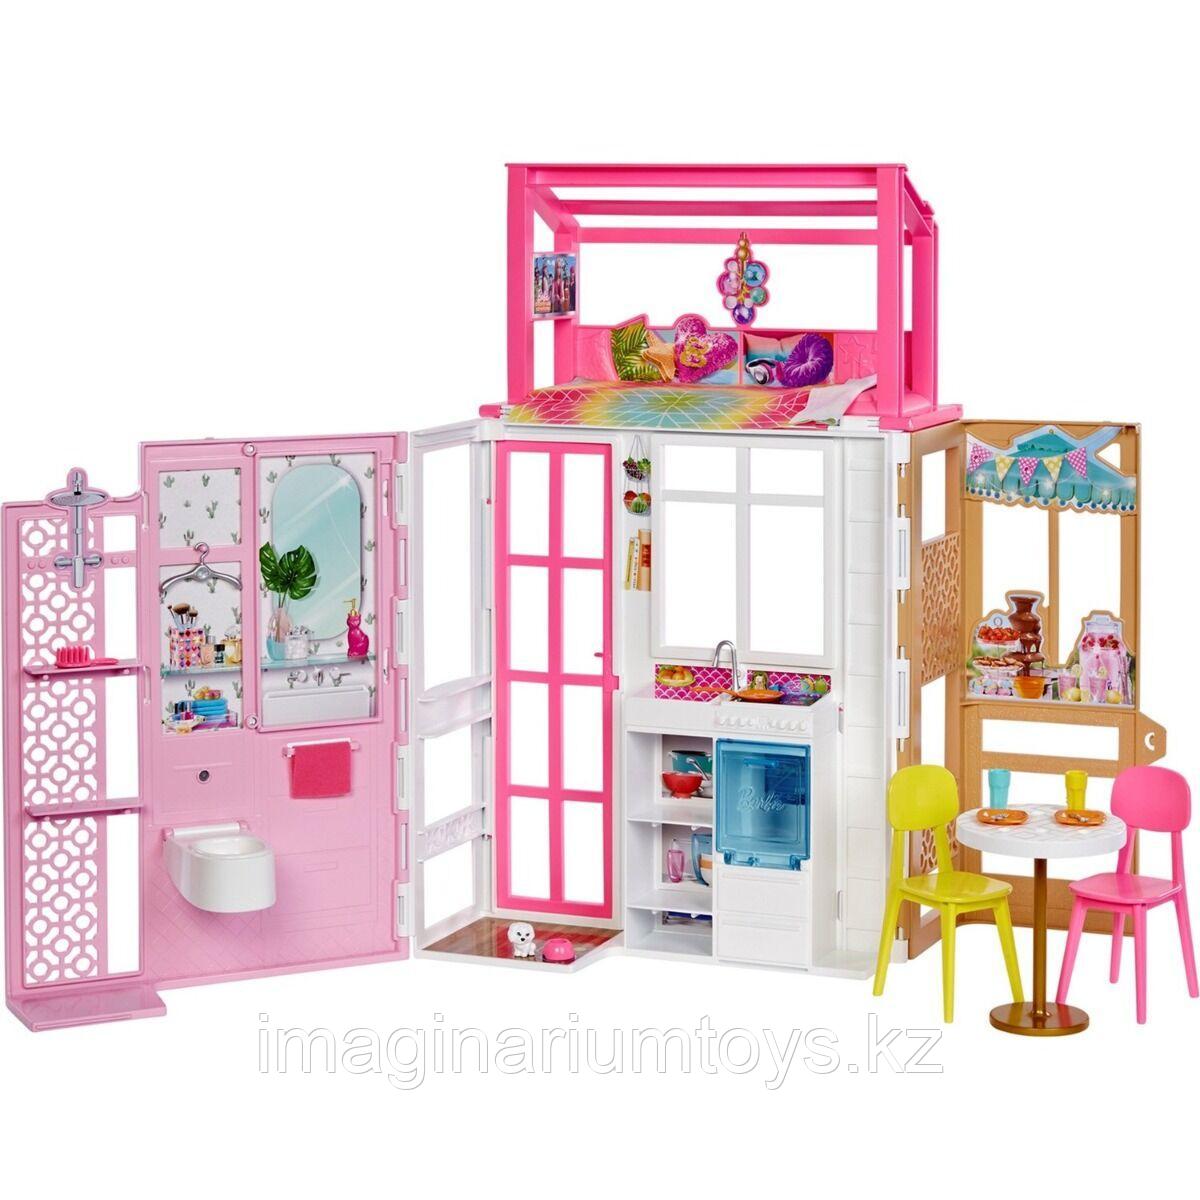 Barbie дом с мебелью и аксессуарами, фото 1